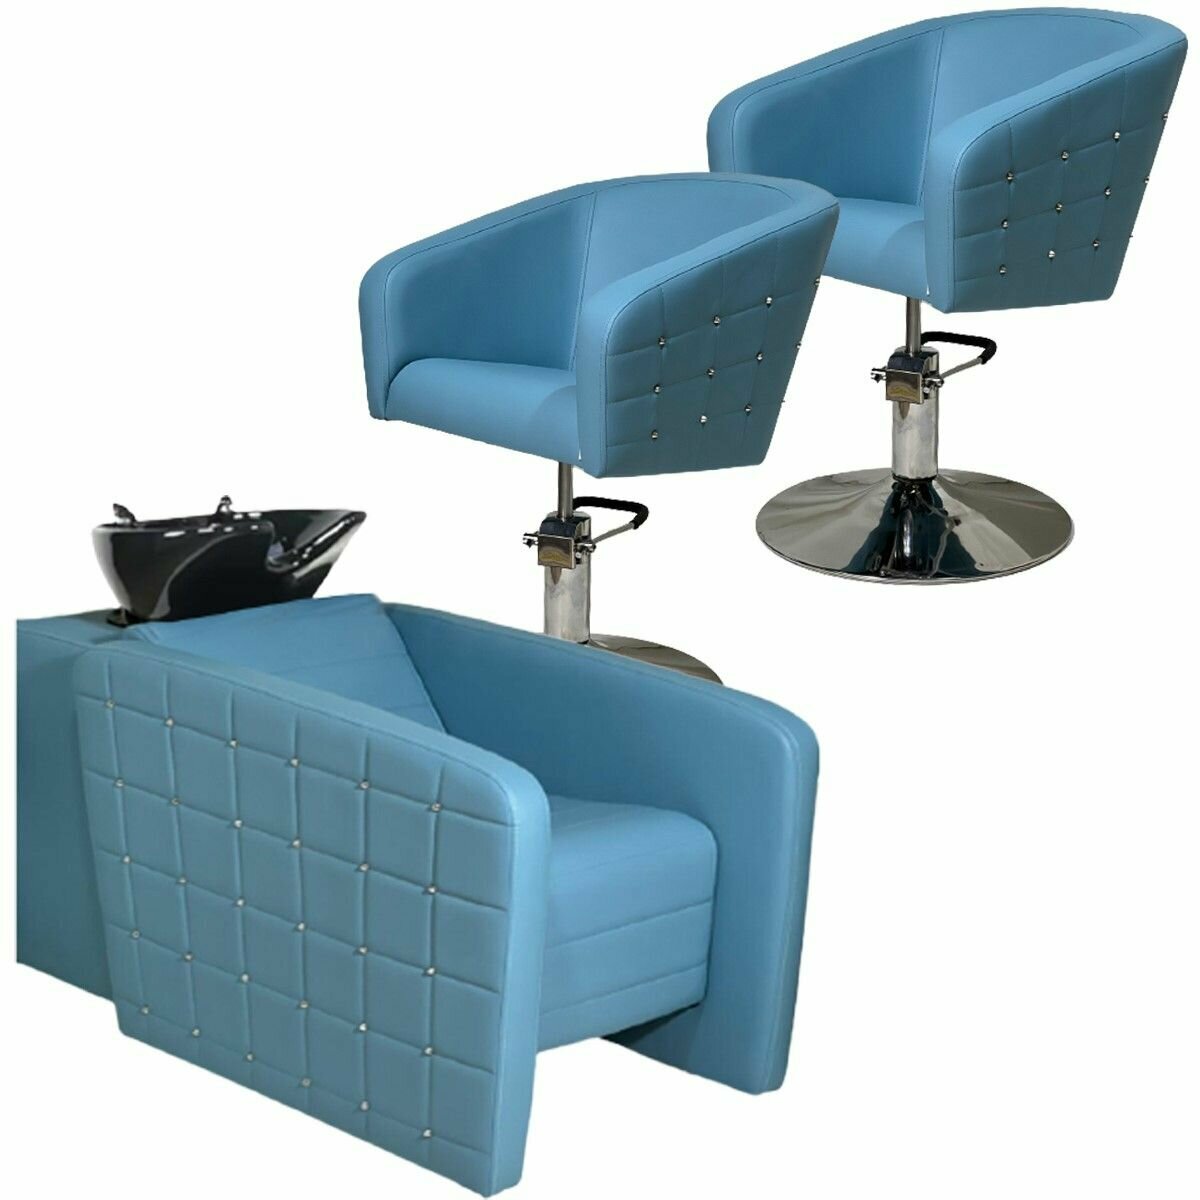 Парикмахерский комплект "Гламрок", Голубой, 2 кресла гидравлика диск, 1 мойка раковина черная глубокая